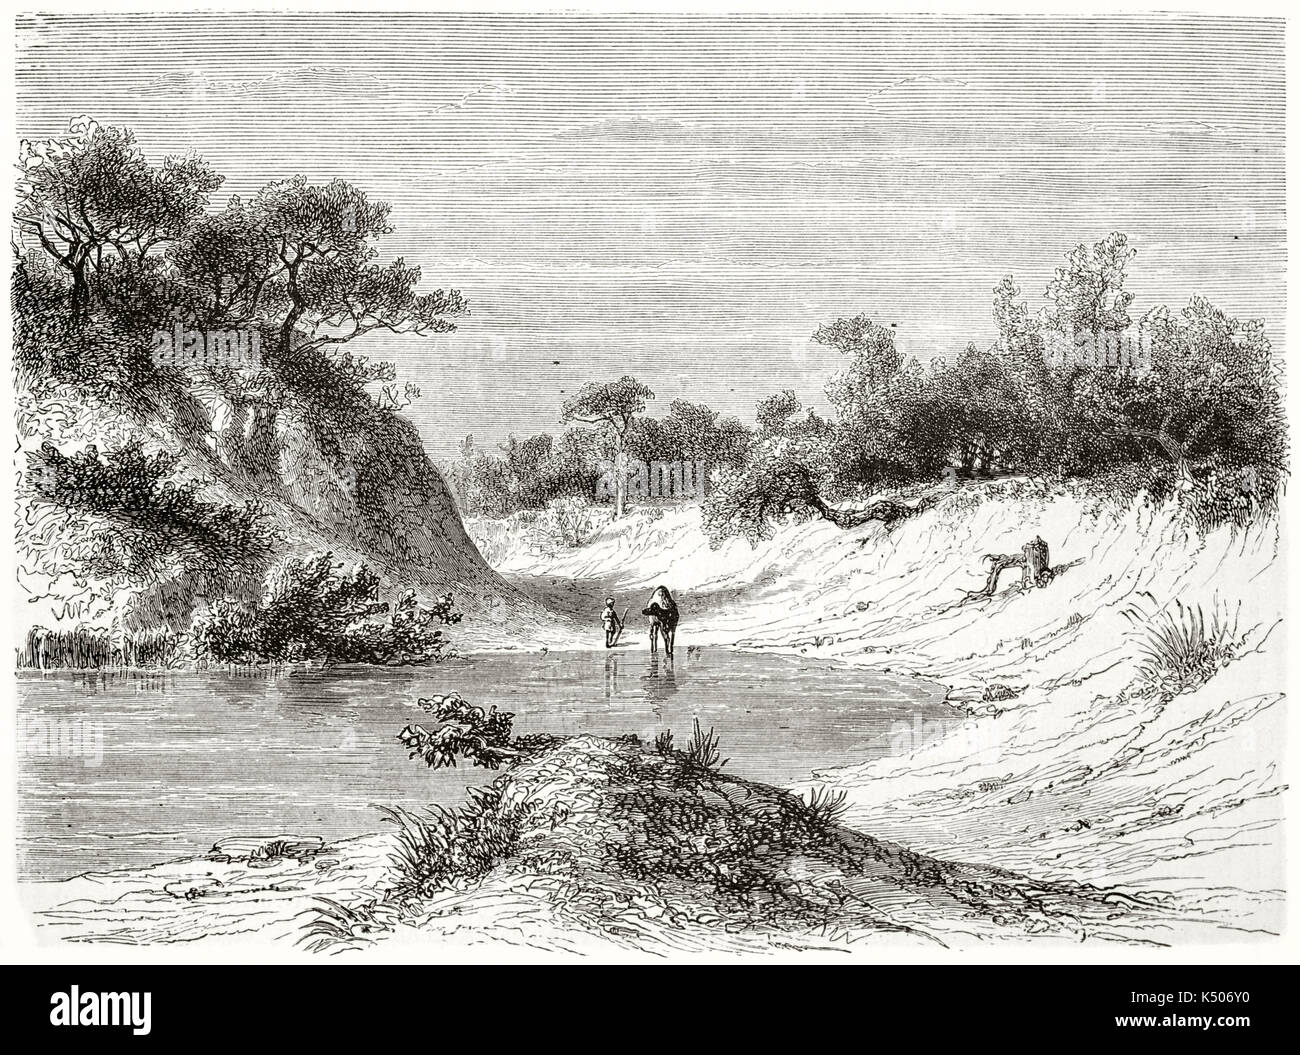 Alte Ansicht von rahad Fluss Sudan, das Flussbett ist fast trocken und ein Kamel trinken das Wasser, durch die Wüste Vegetation umgeben. Von Girardet nach Lejean auf Le Tour du Monde Paris 1862 veröffentlicht erstellt Stockfoto